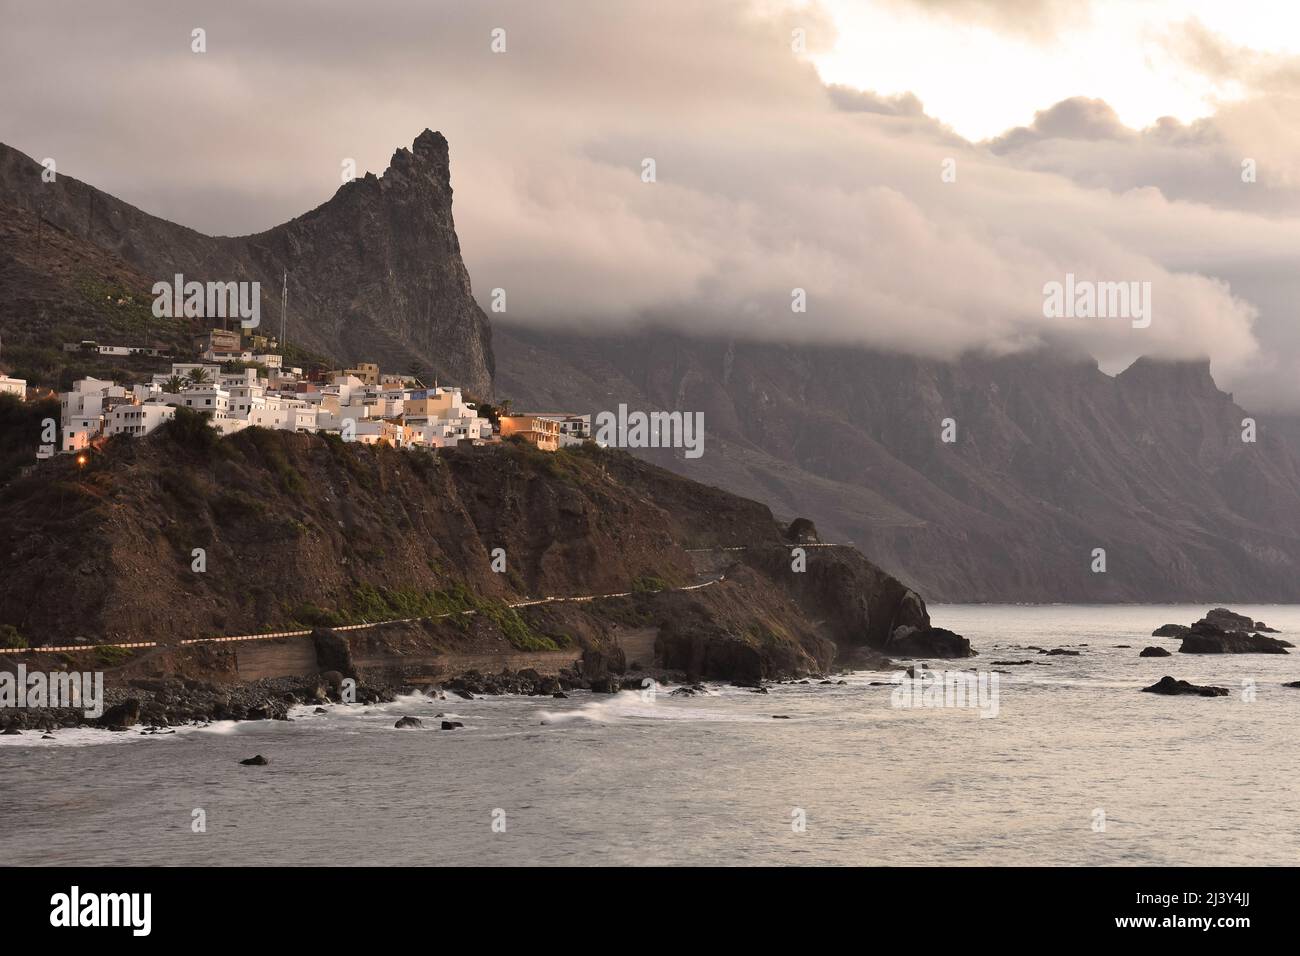 Village d'Almaciga au sommet d'une falaise, au nord-est de Tenerife, îles Canaries Espagne. Des nuages se forment au-dessus des montagnes d'Anaga dans la soirée. Banque D'Images